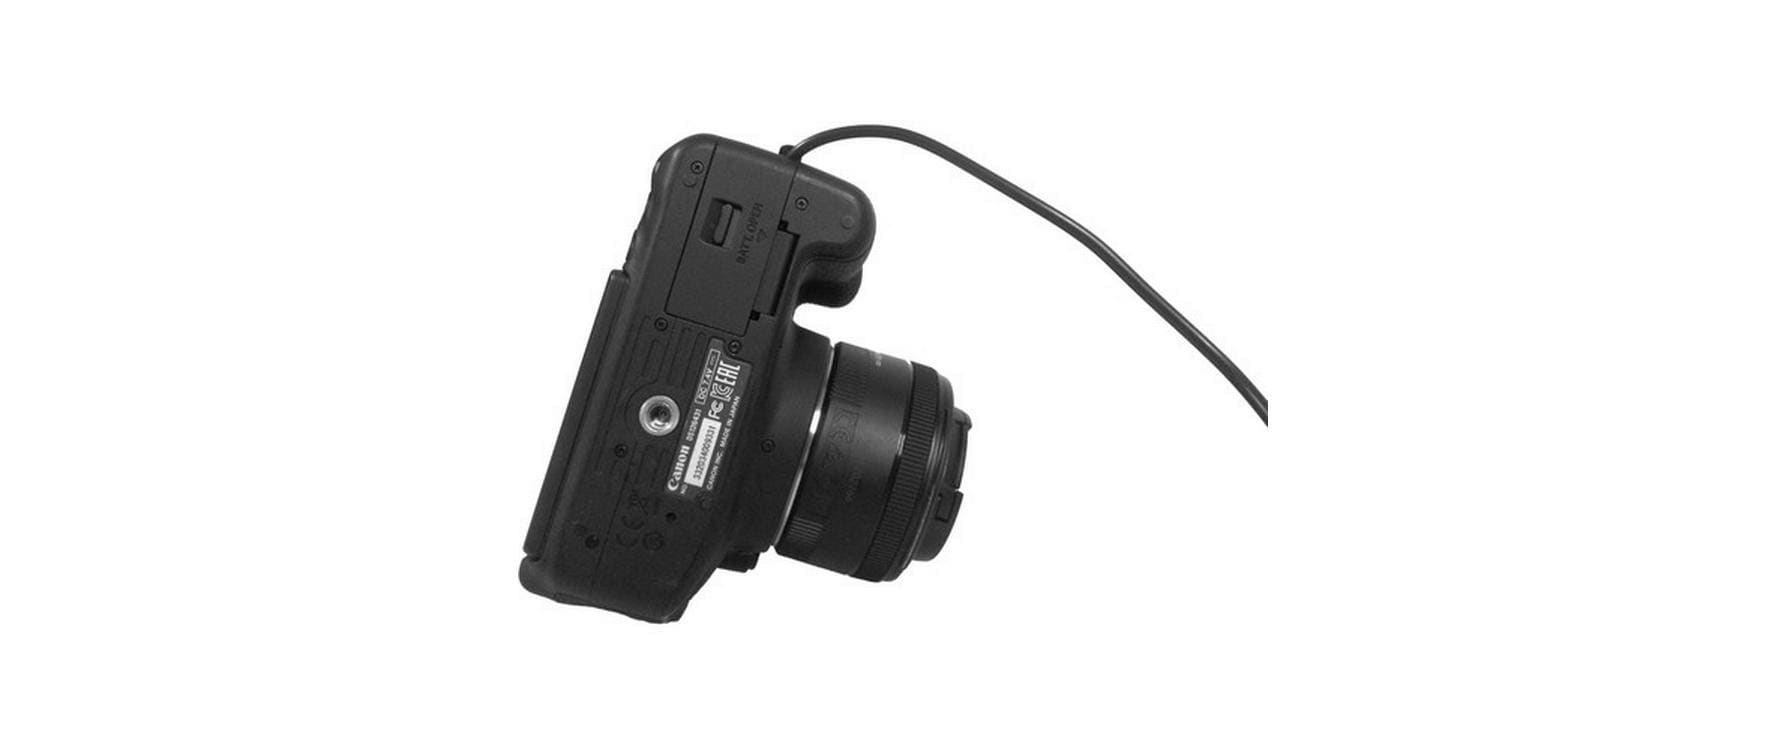 Tether Tools Relais-Kamerakoppler CRPBLF19, Panasonic DMW-BLF19